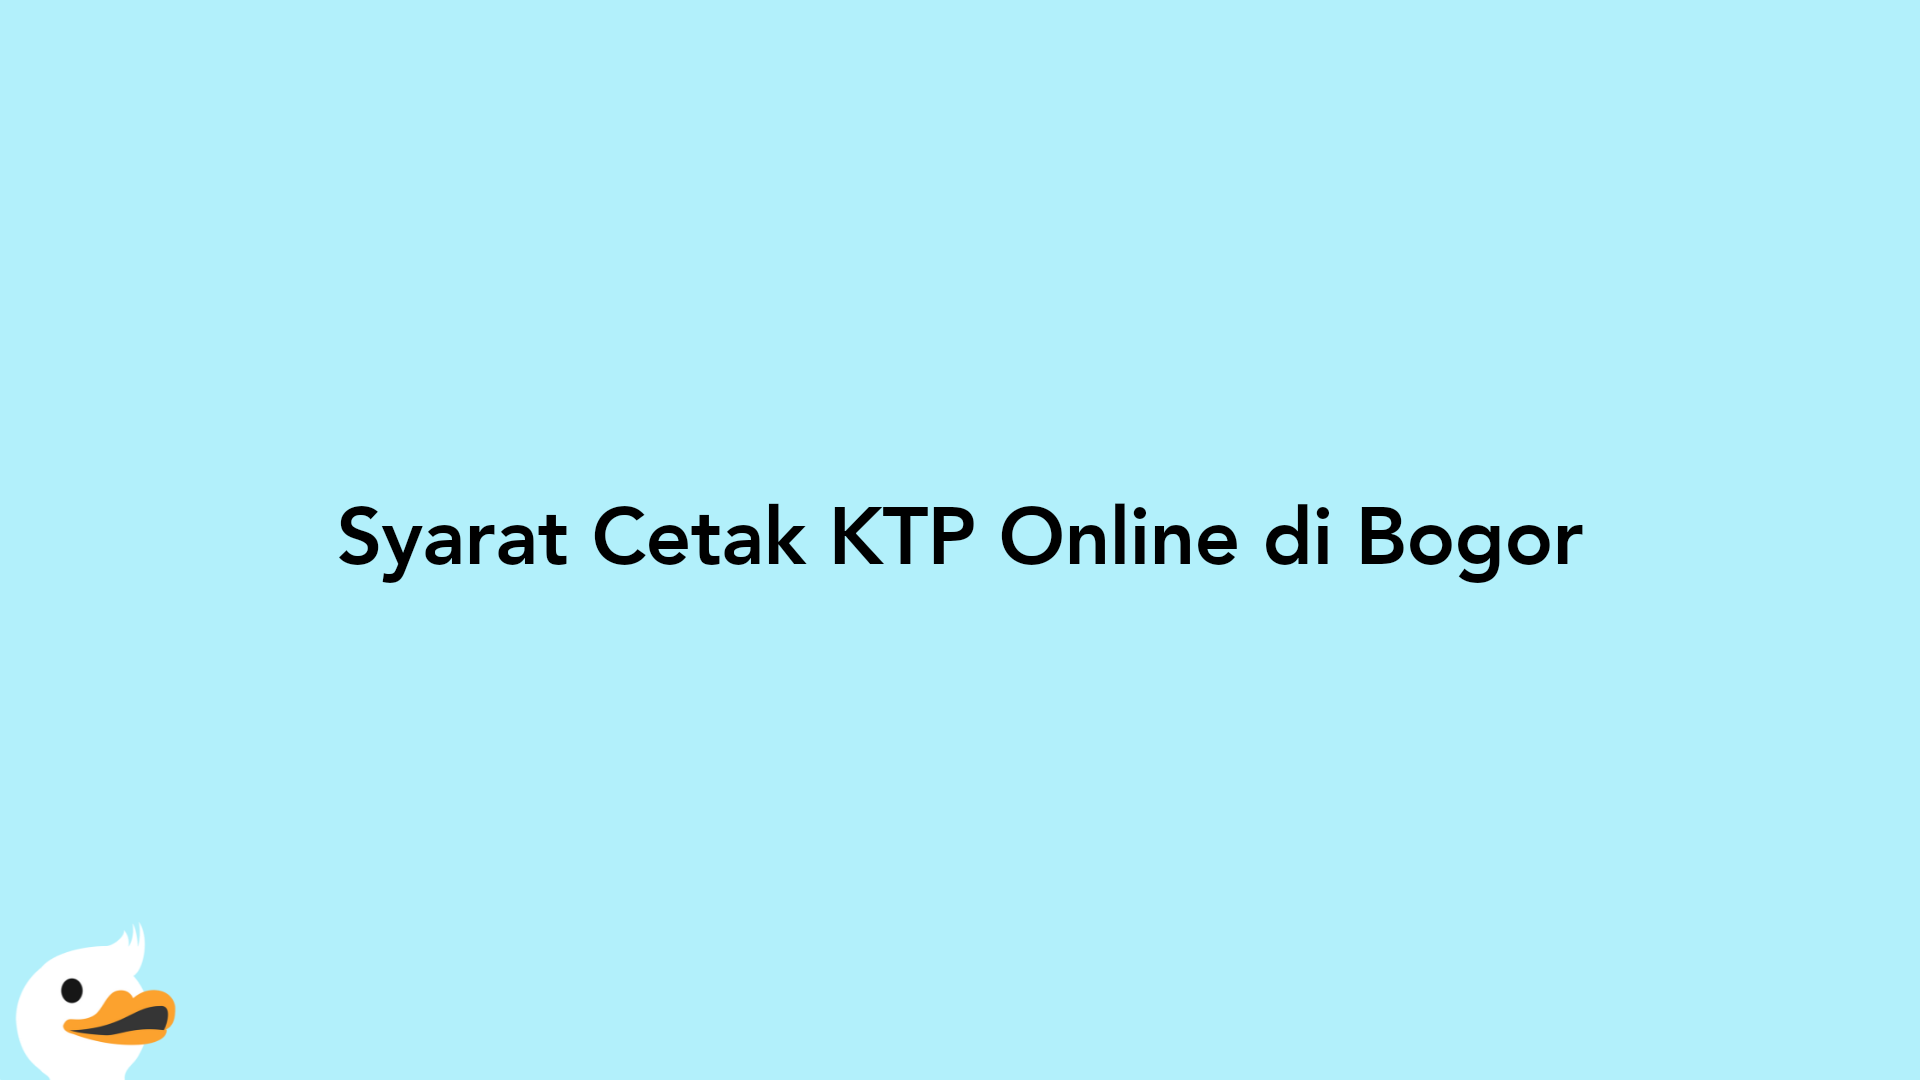 Syarat Cetak KTP Online di Bogor